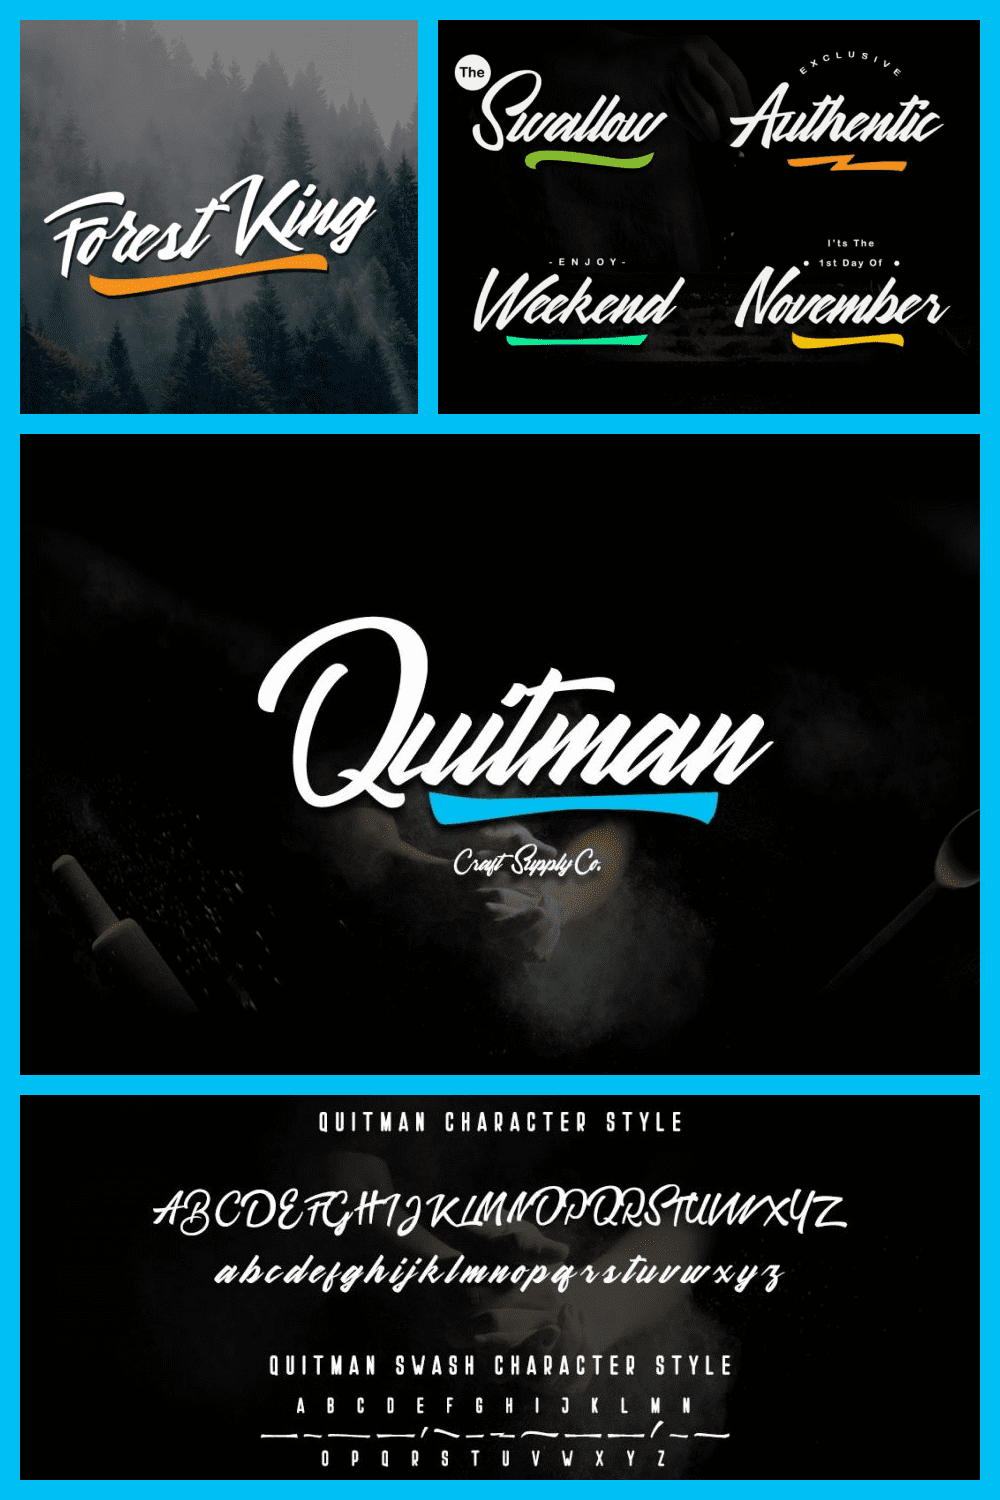 Quitman Script Font - MasterBundles - Pinterest Collage Image.